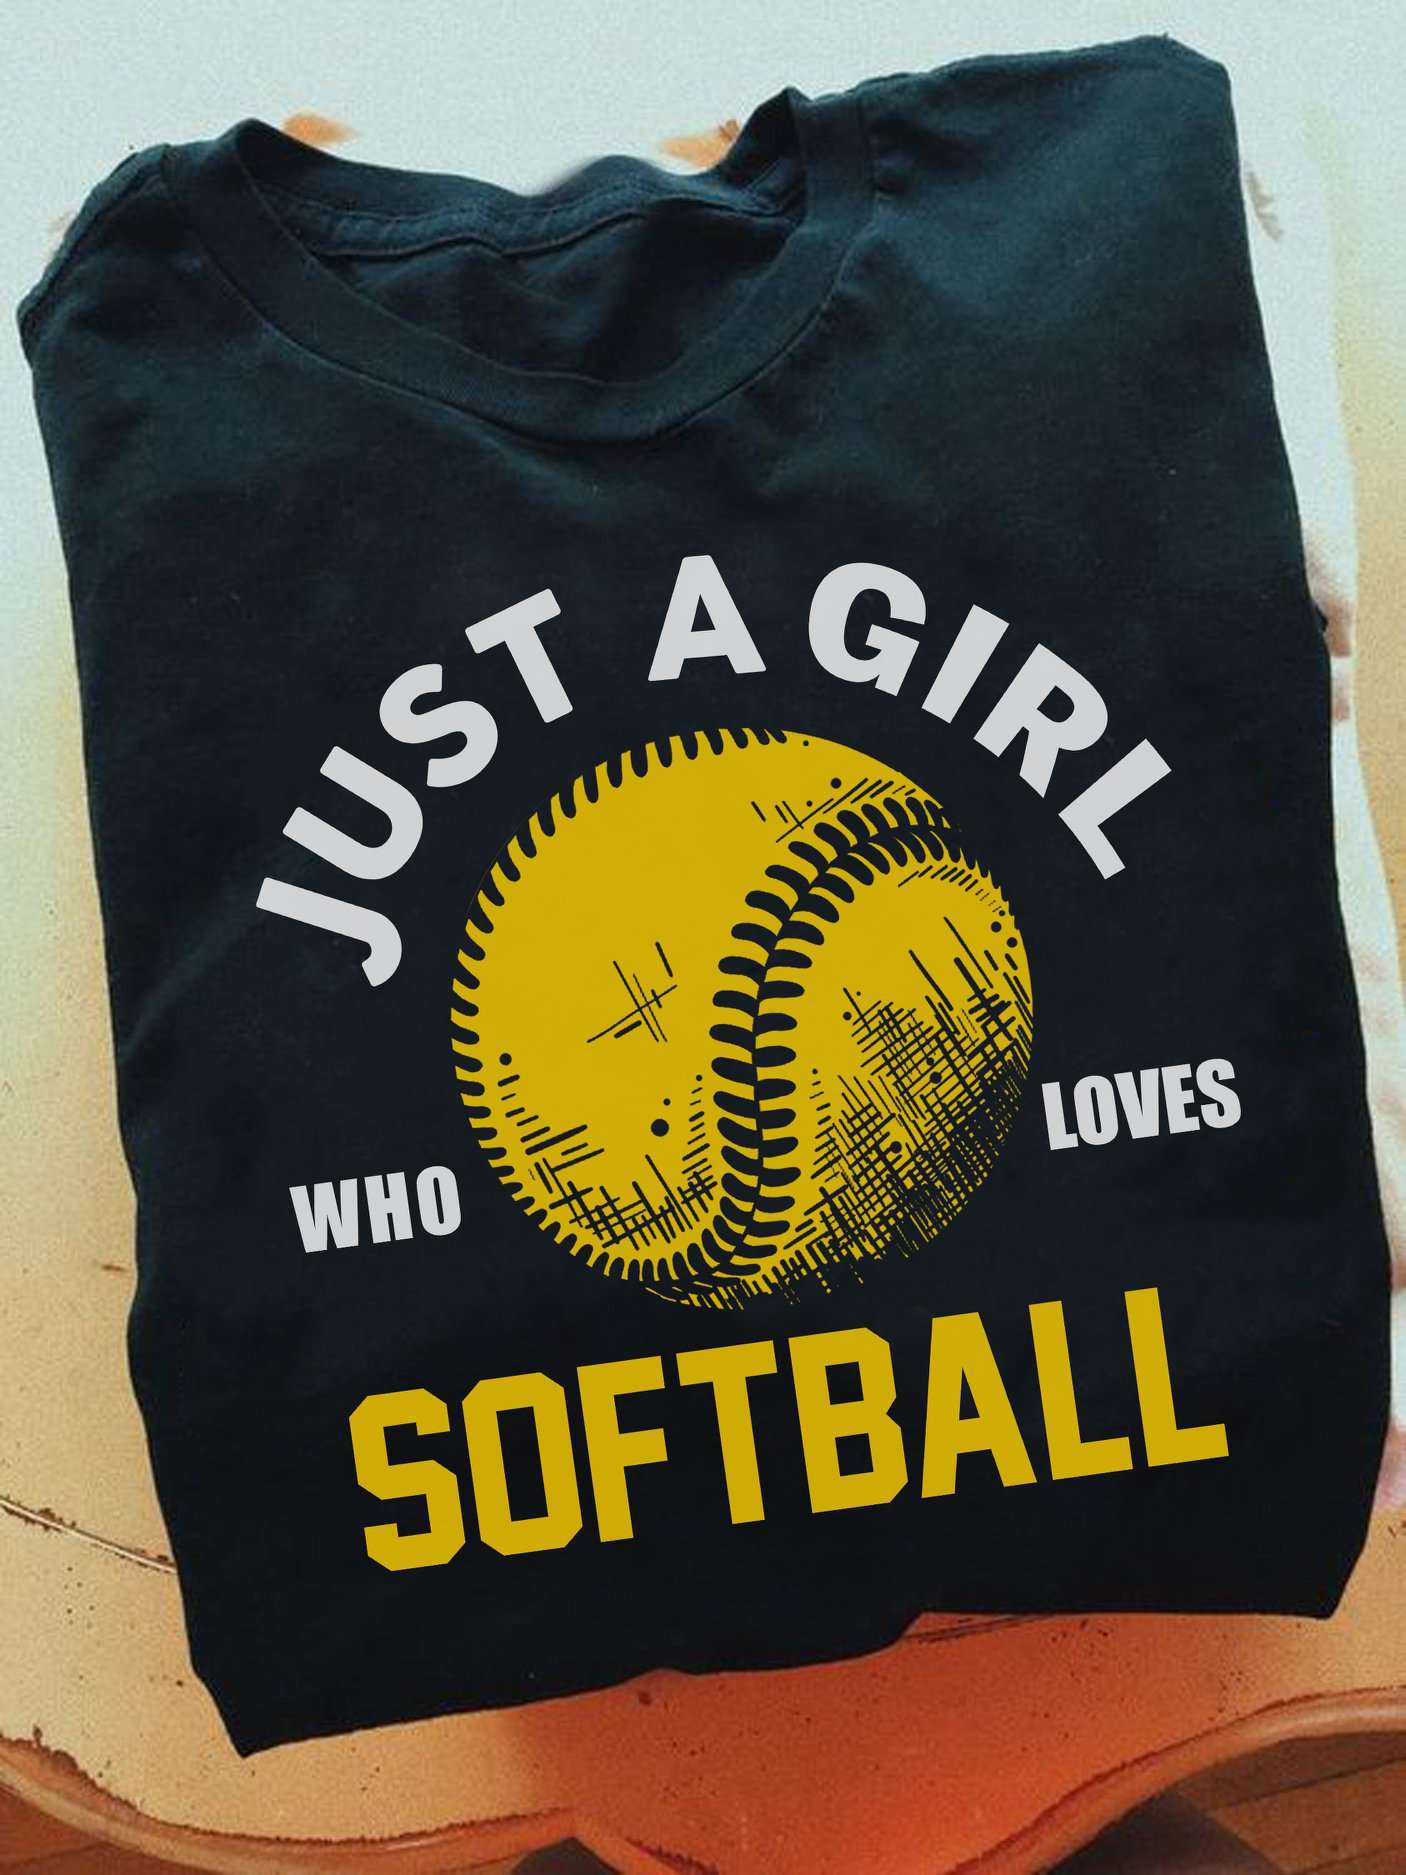 Just a girl who loves softball - Girl softball player, love playing softball gift